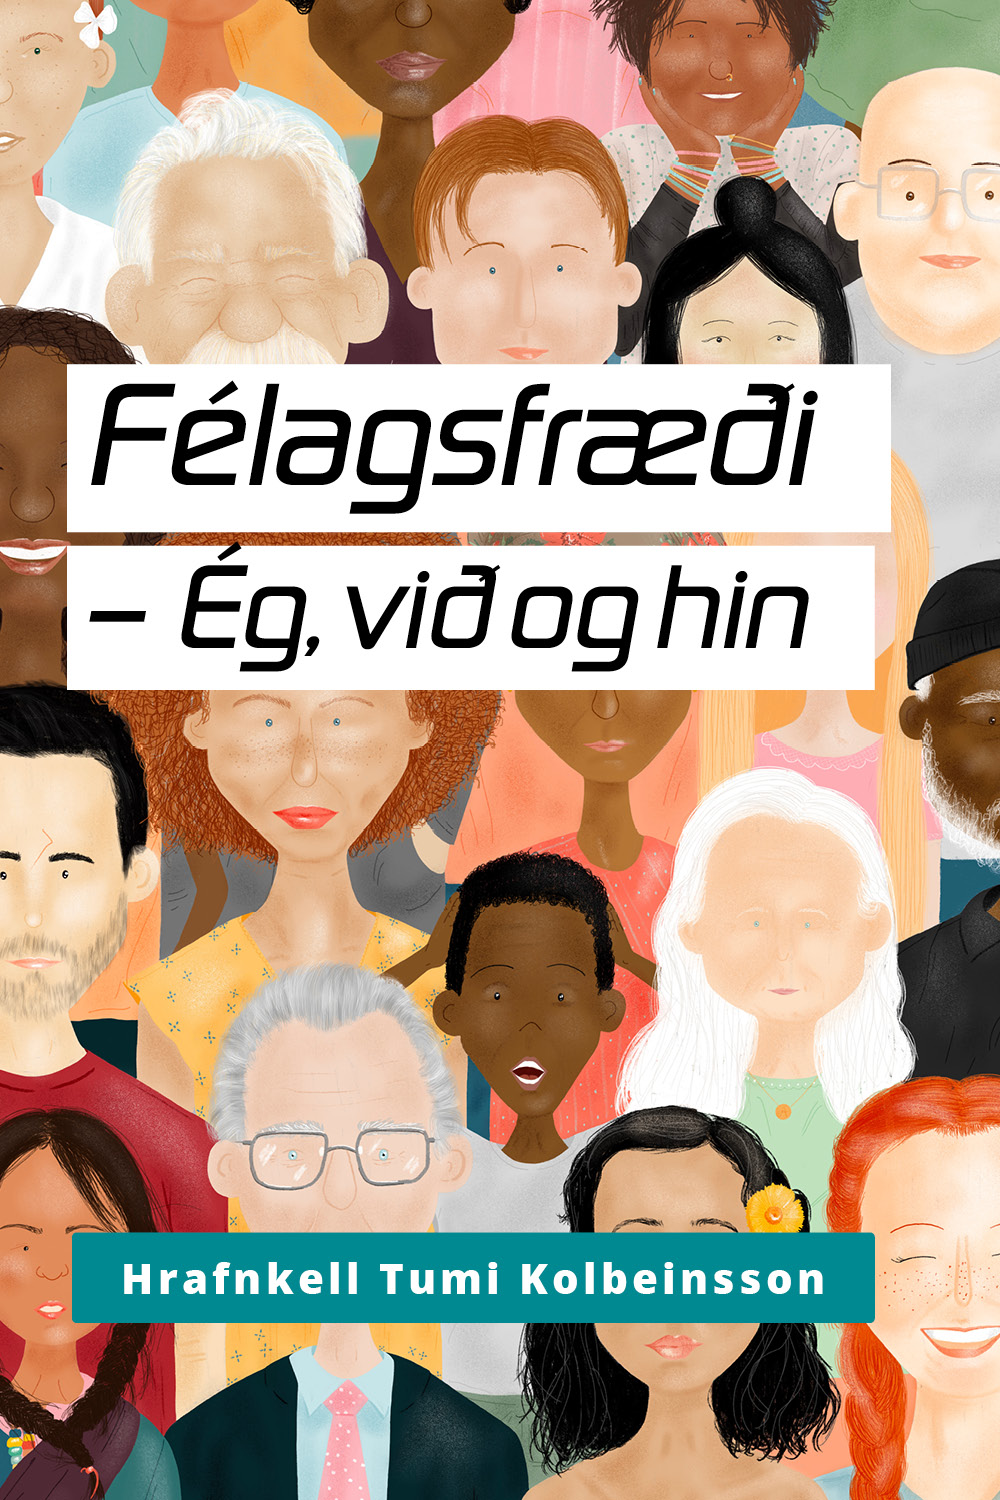 Felagsfraedi_egthuoghinir_portrait